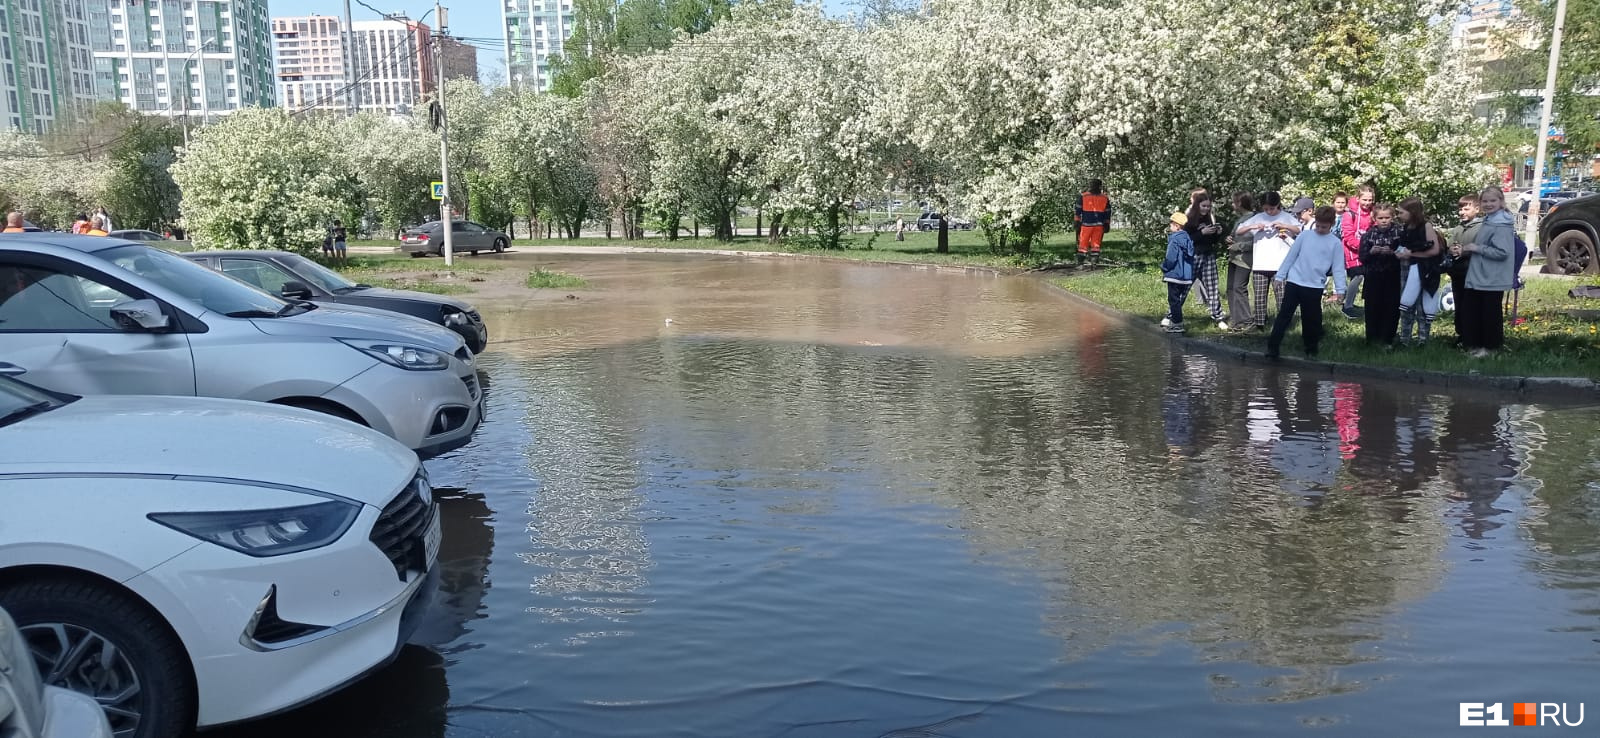 В Екатеринбурге улица в центре города превратилась в реку. Видео